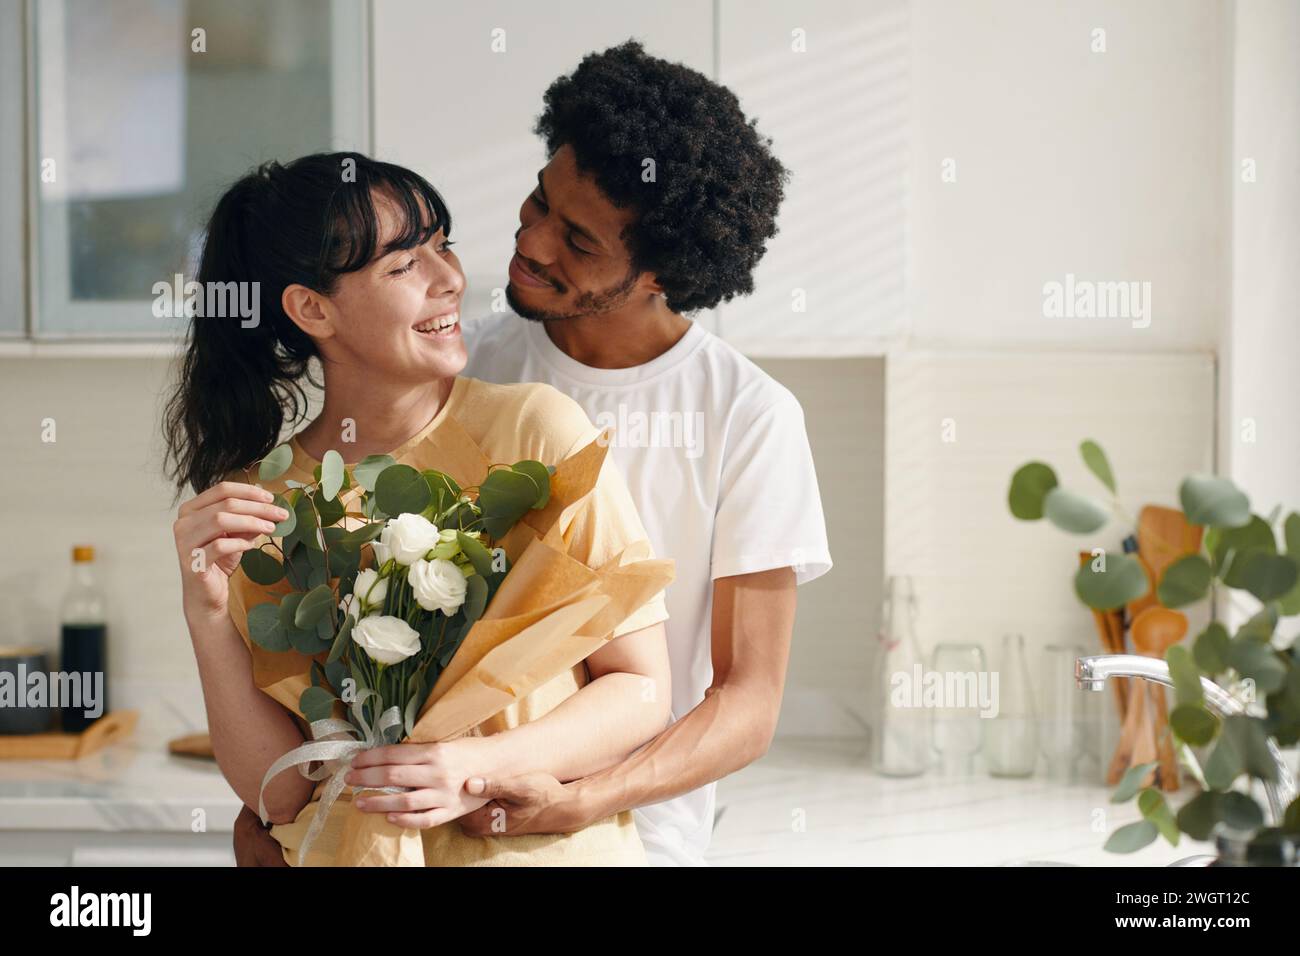 Jeune couple affectueux dans les vêtements décontractés se regardant l'un l'autre tandis que le gars embrassant sa petite amie tenant un bouquet de fleurs blanches Banque D'Images